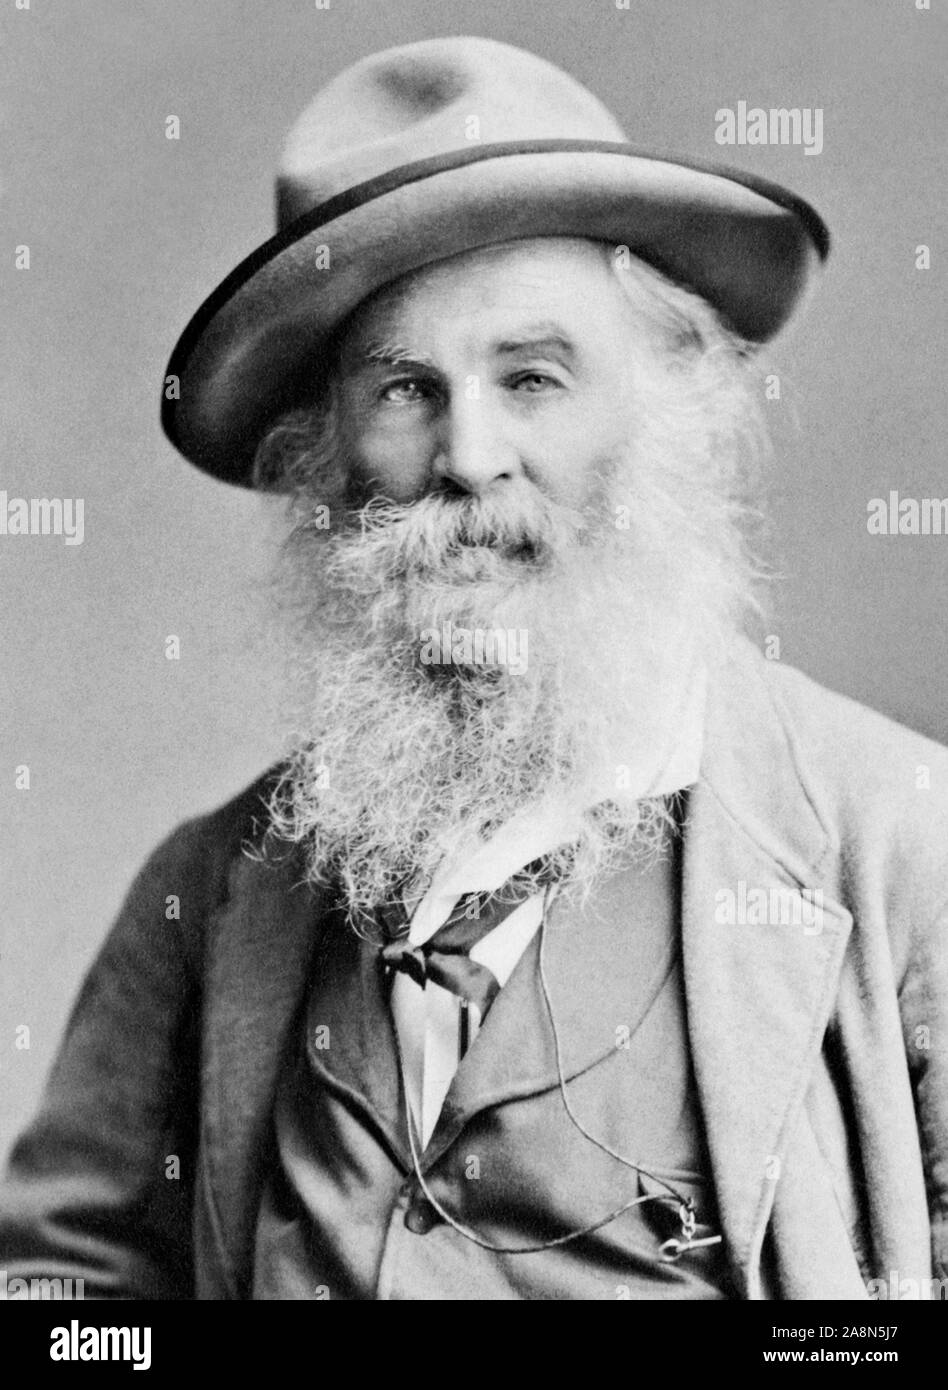 Vintage photo portrait de poète, essayiste et journaliste Walt Whitman (1819 - 1892). Photo vers 1885 par Brady de New York. Banque D'Images